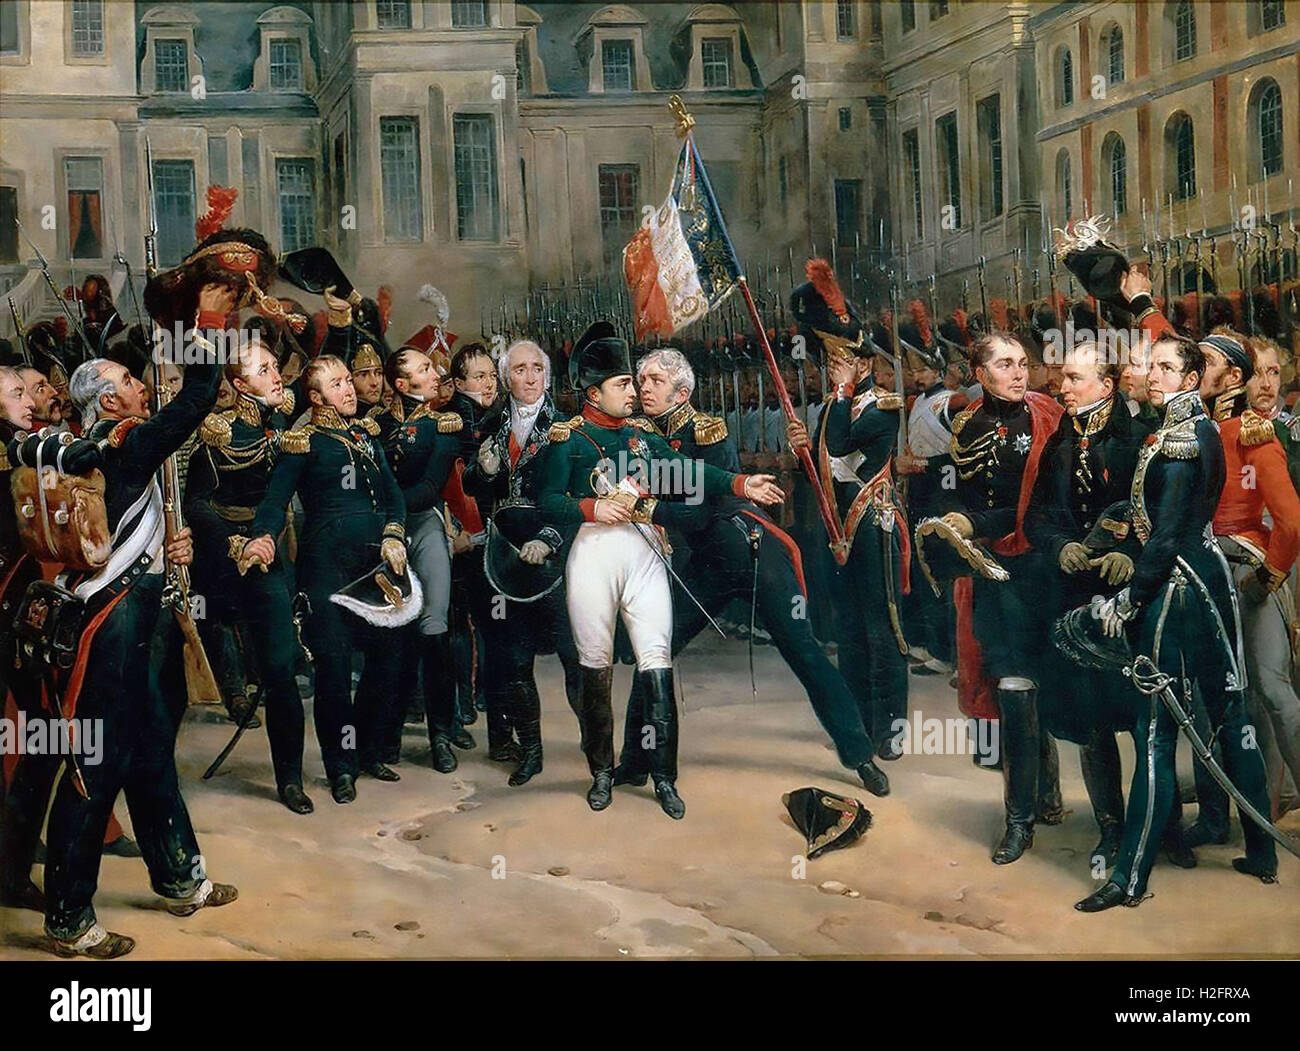 NAPOLEON BONAPARTE (1769-1821) seinen Abschied von seiner kaiserlichen Garde in Fontainebleau am 20. April 1814 von Antoine Montfort etwa 1860 gemalt Stockfoto